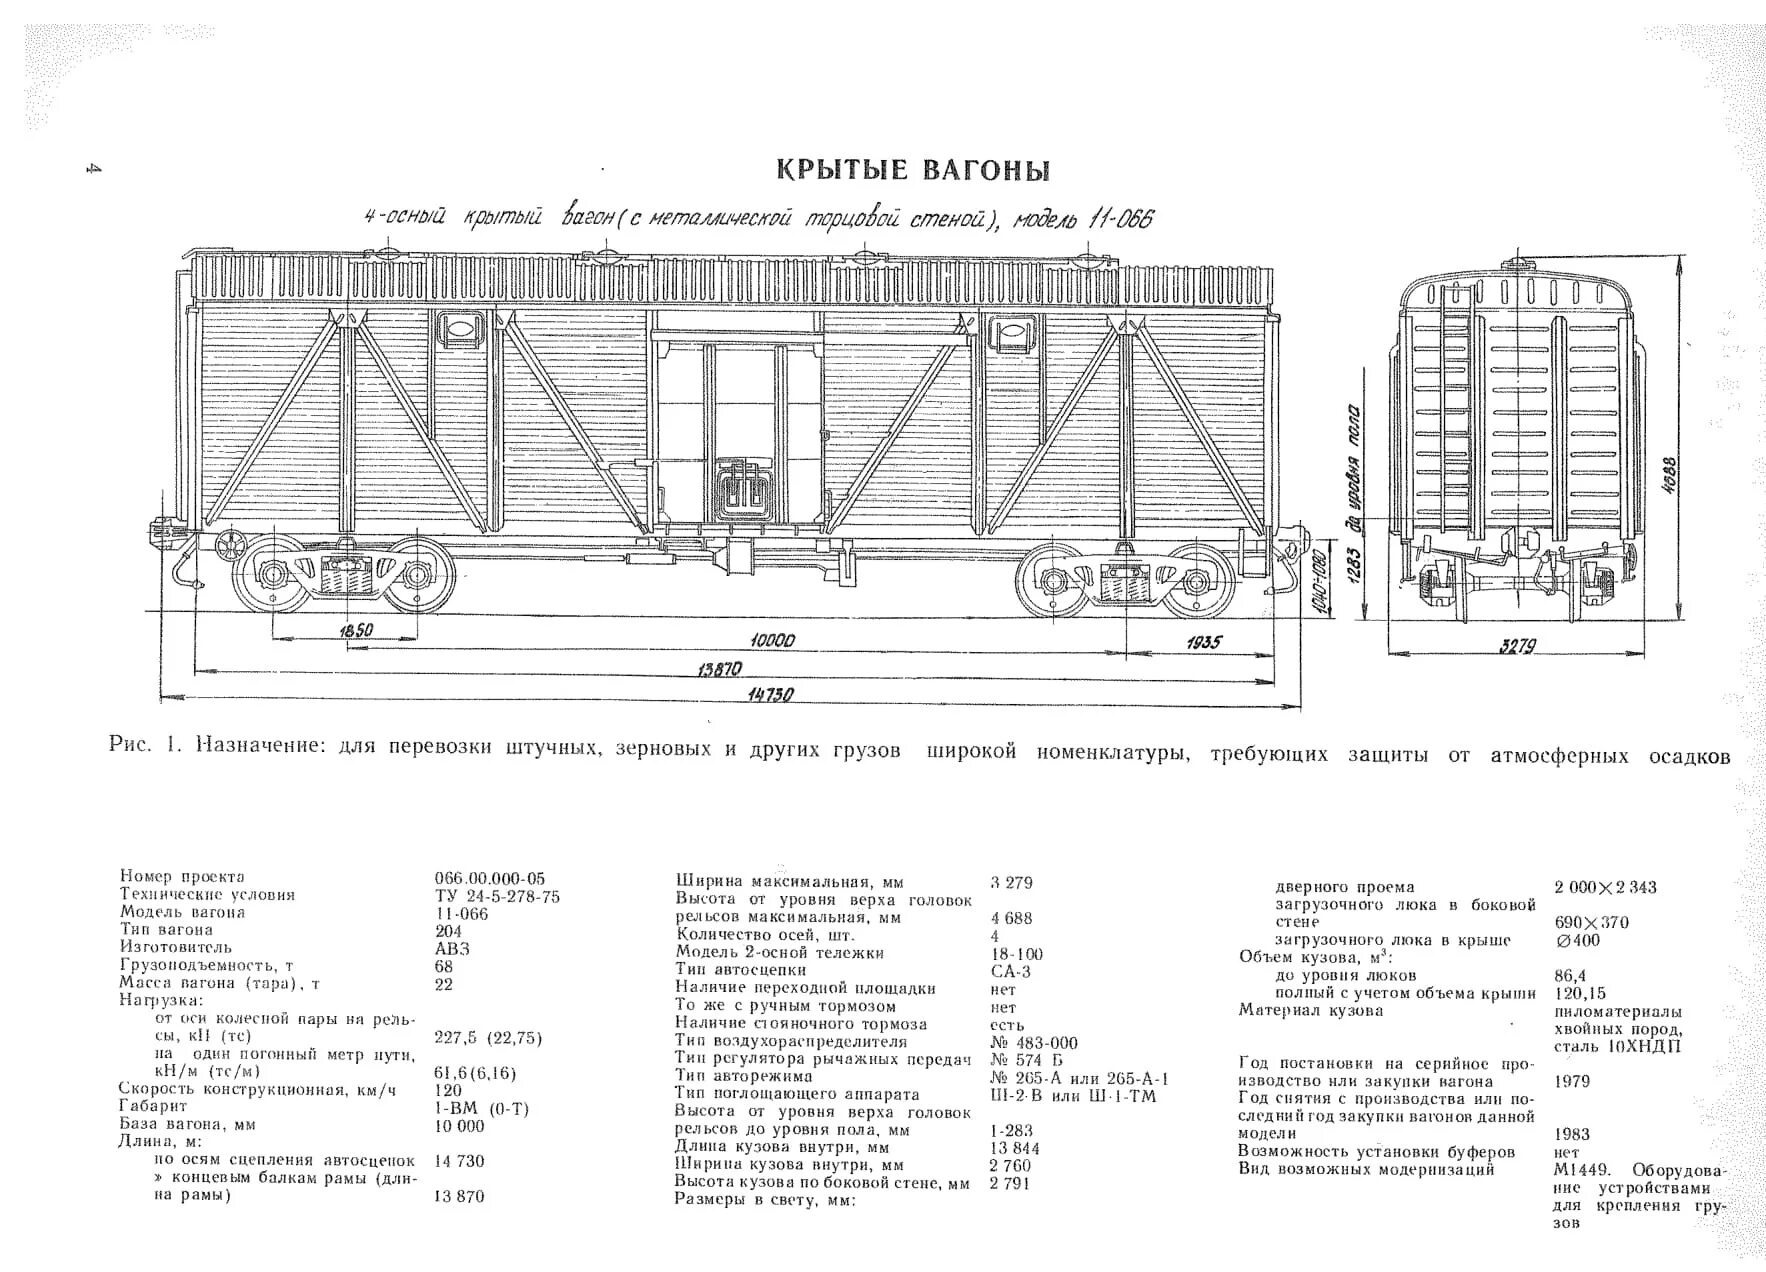 Какой длины железнодорожный вагон